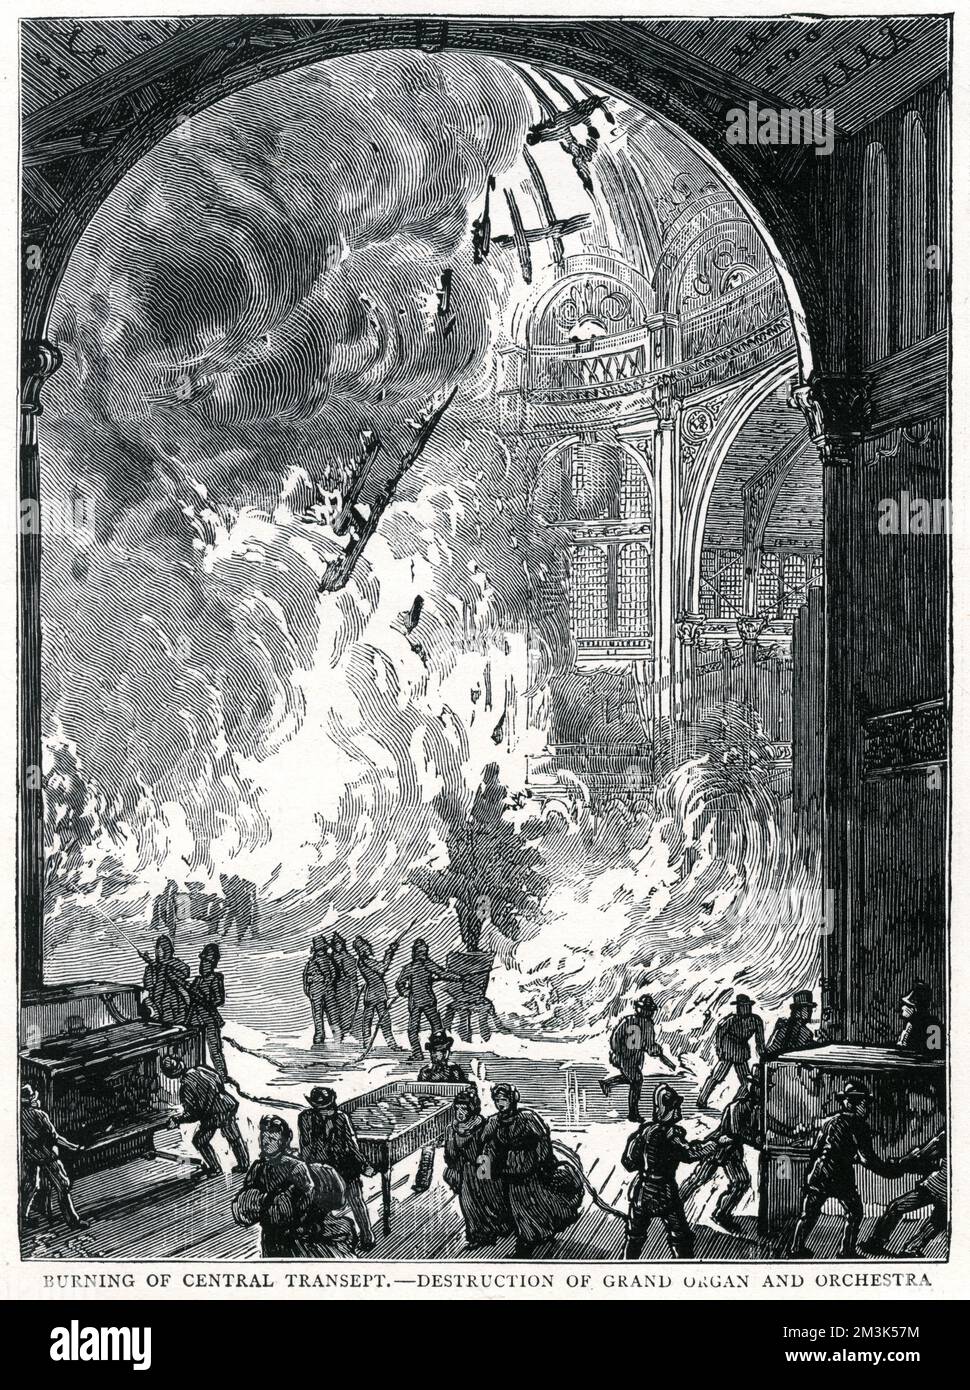 Vue à l'intérieur du Palais Alexandra, Muswell Hill, le Grand orgue et l'orchestre ont été détruits par le feu. 9 juin 1873 Banque D'Images